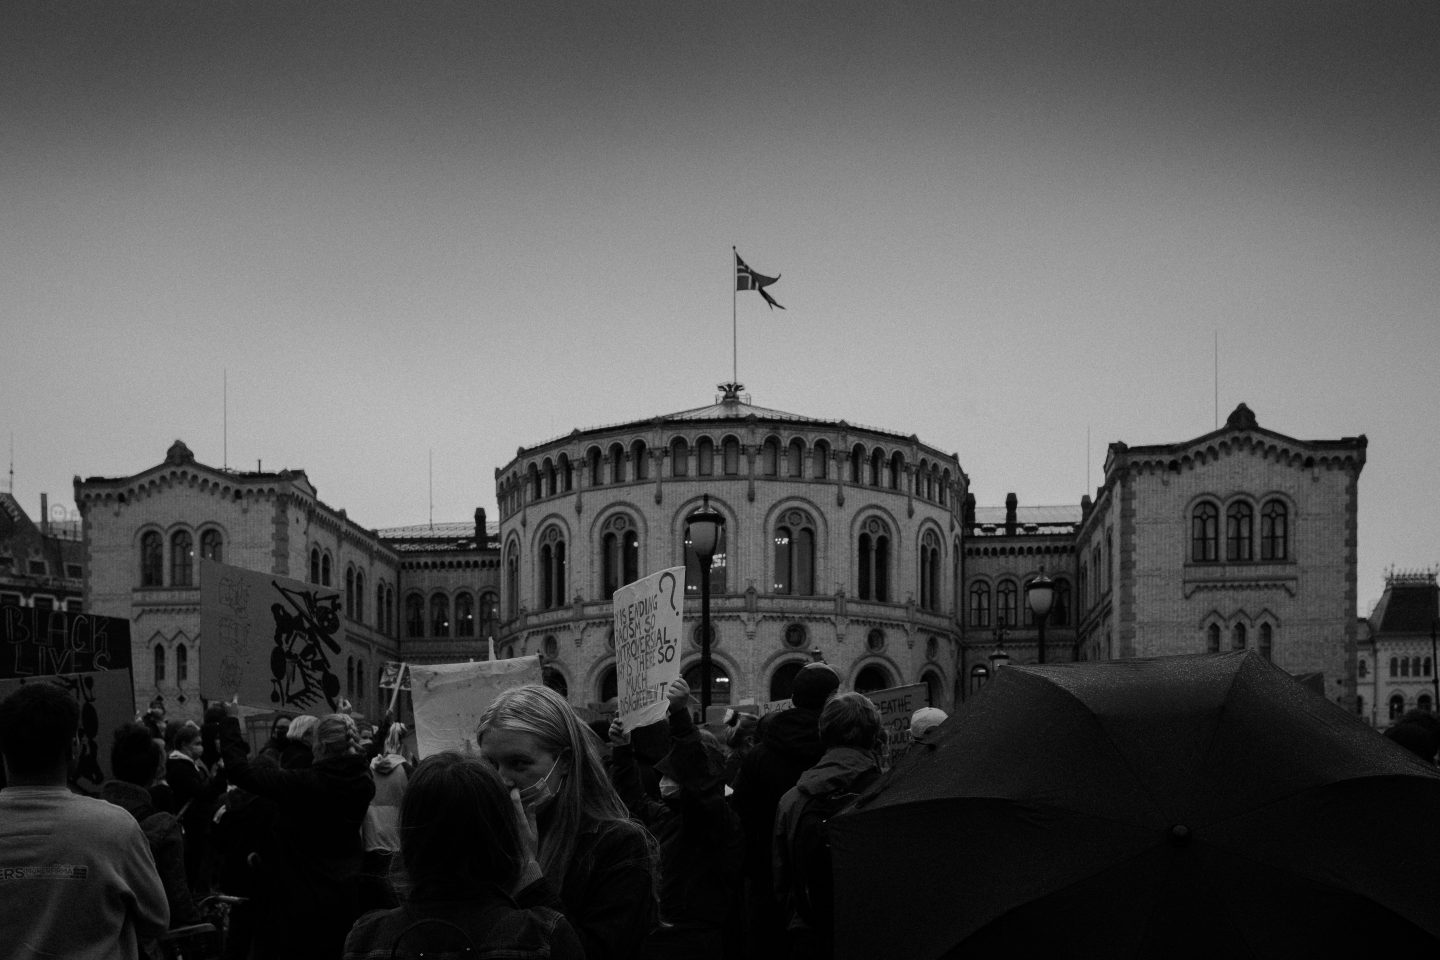 Et bilde av det norske stortinget i Oslo i svart-hvitt med en rekke demonstranter foran.